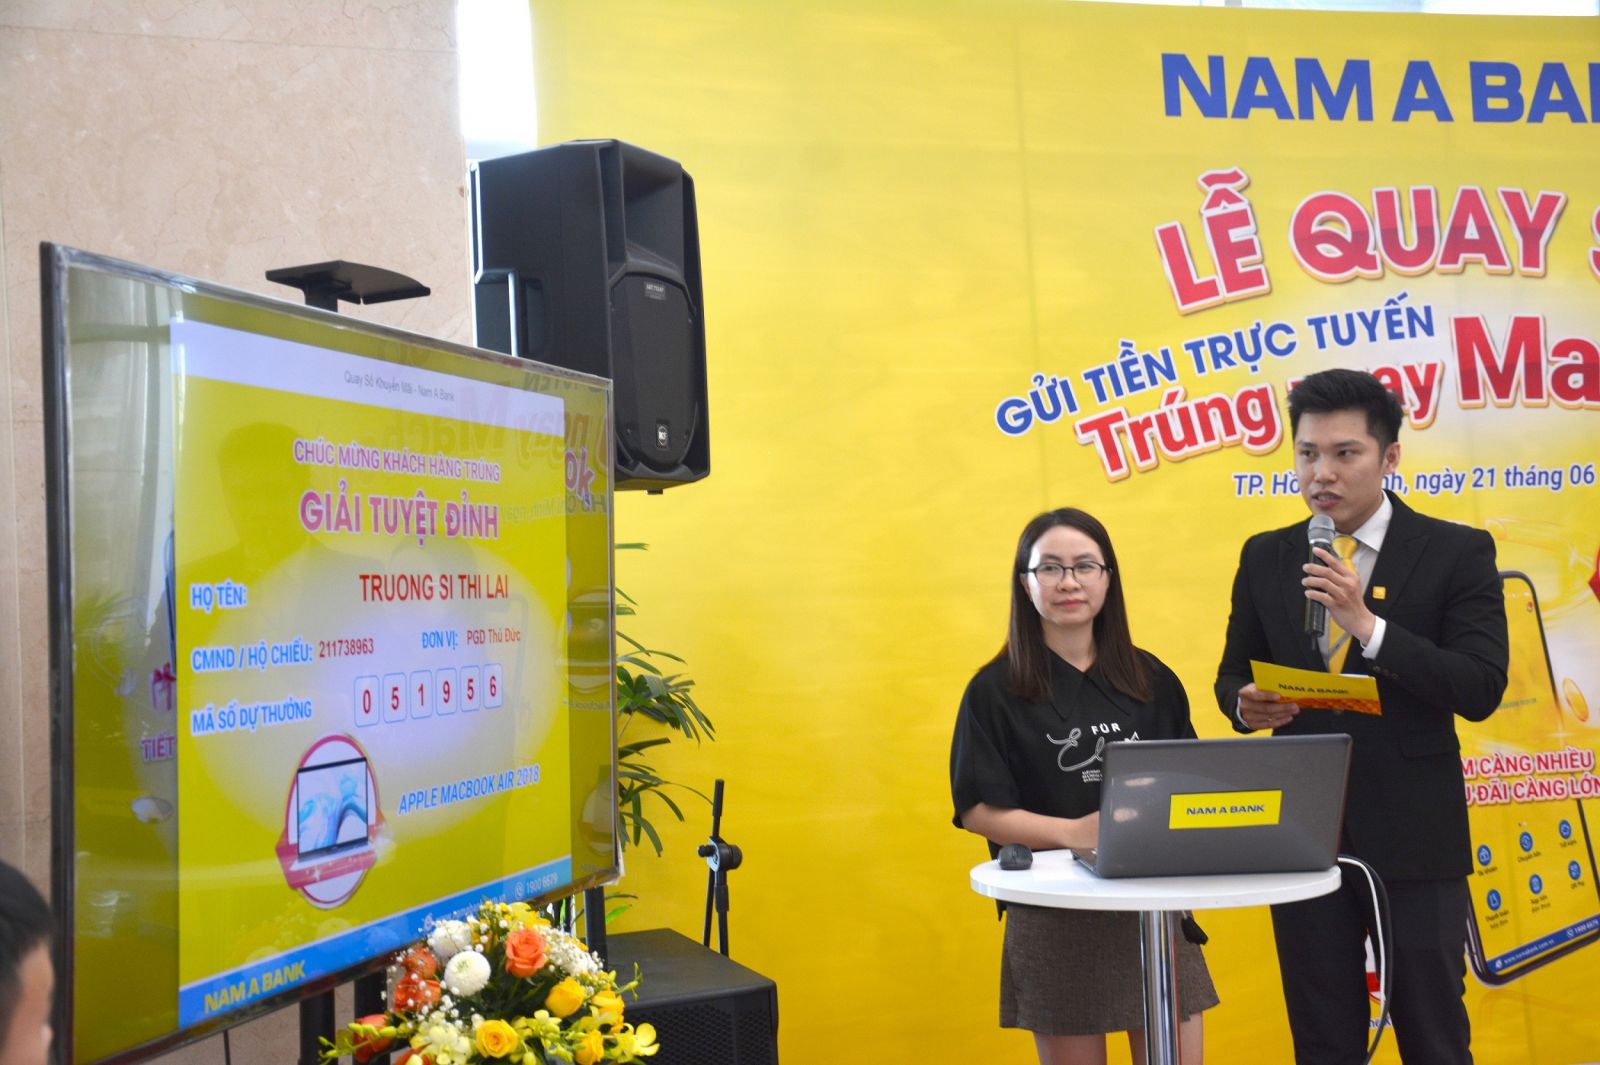 Bà Phạm Thị Vân – đại diện Sở Công thương TP HCM hỗ trợ quay số tìm ra chủ nhân Giải tuyệt đỉnh – Laptop Apple Macbook Air là khách hàng Trương Sĩ Thị Lài.